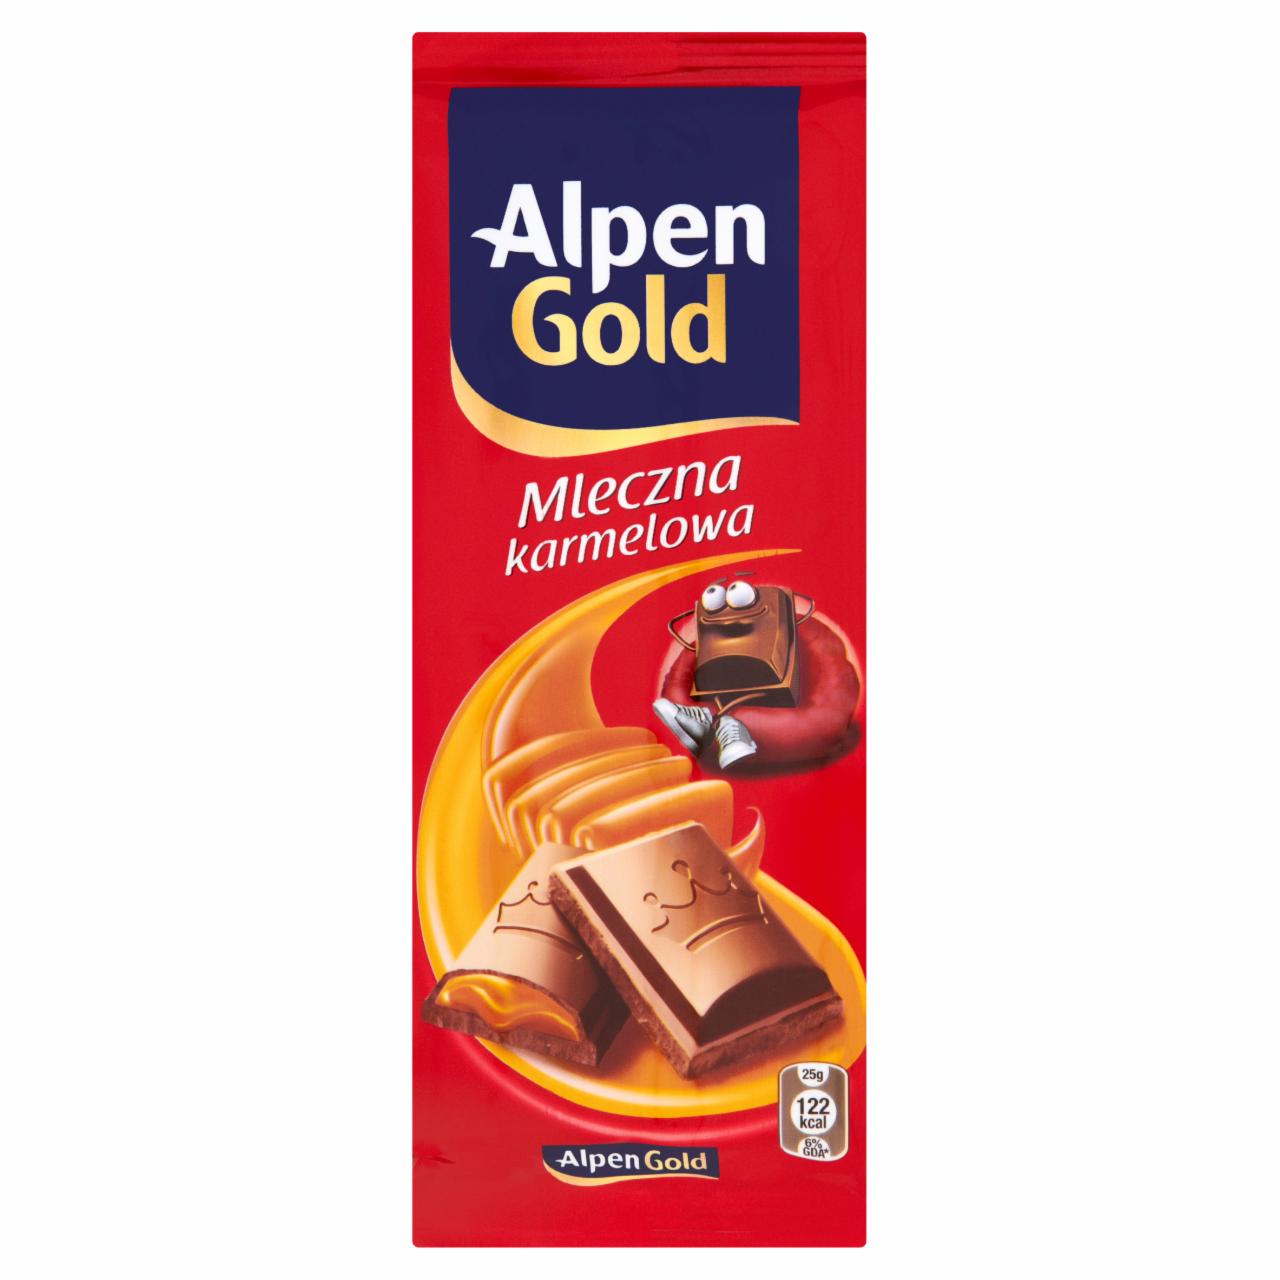 Zdjęcia - Alpen Gold Mleczna karmelowa Czekolada 100 g